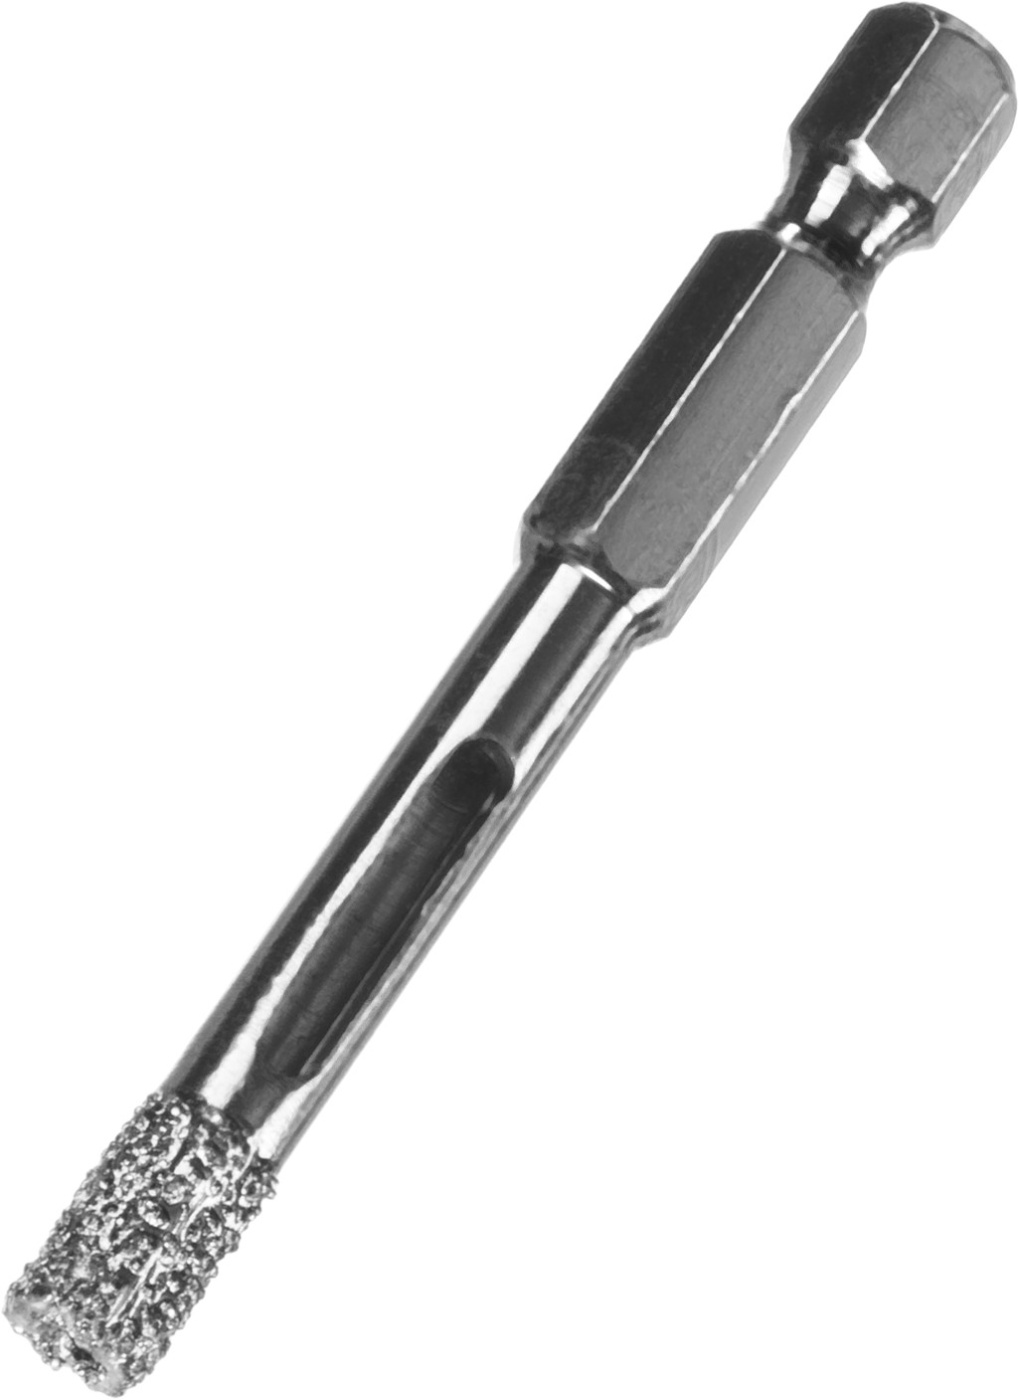 ЗУБР АВК, d 6 мм, (HEX 1/4″, 15 мм кромка), вакуумное алмазное трубчатое сверло, Профессионал (29865-06)